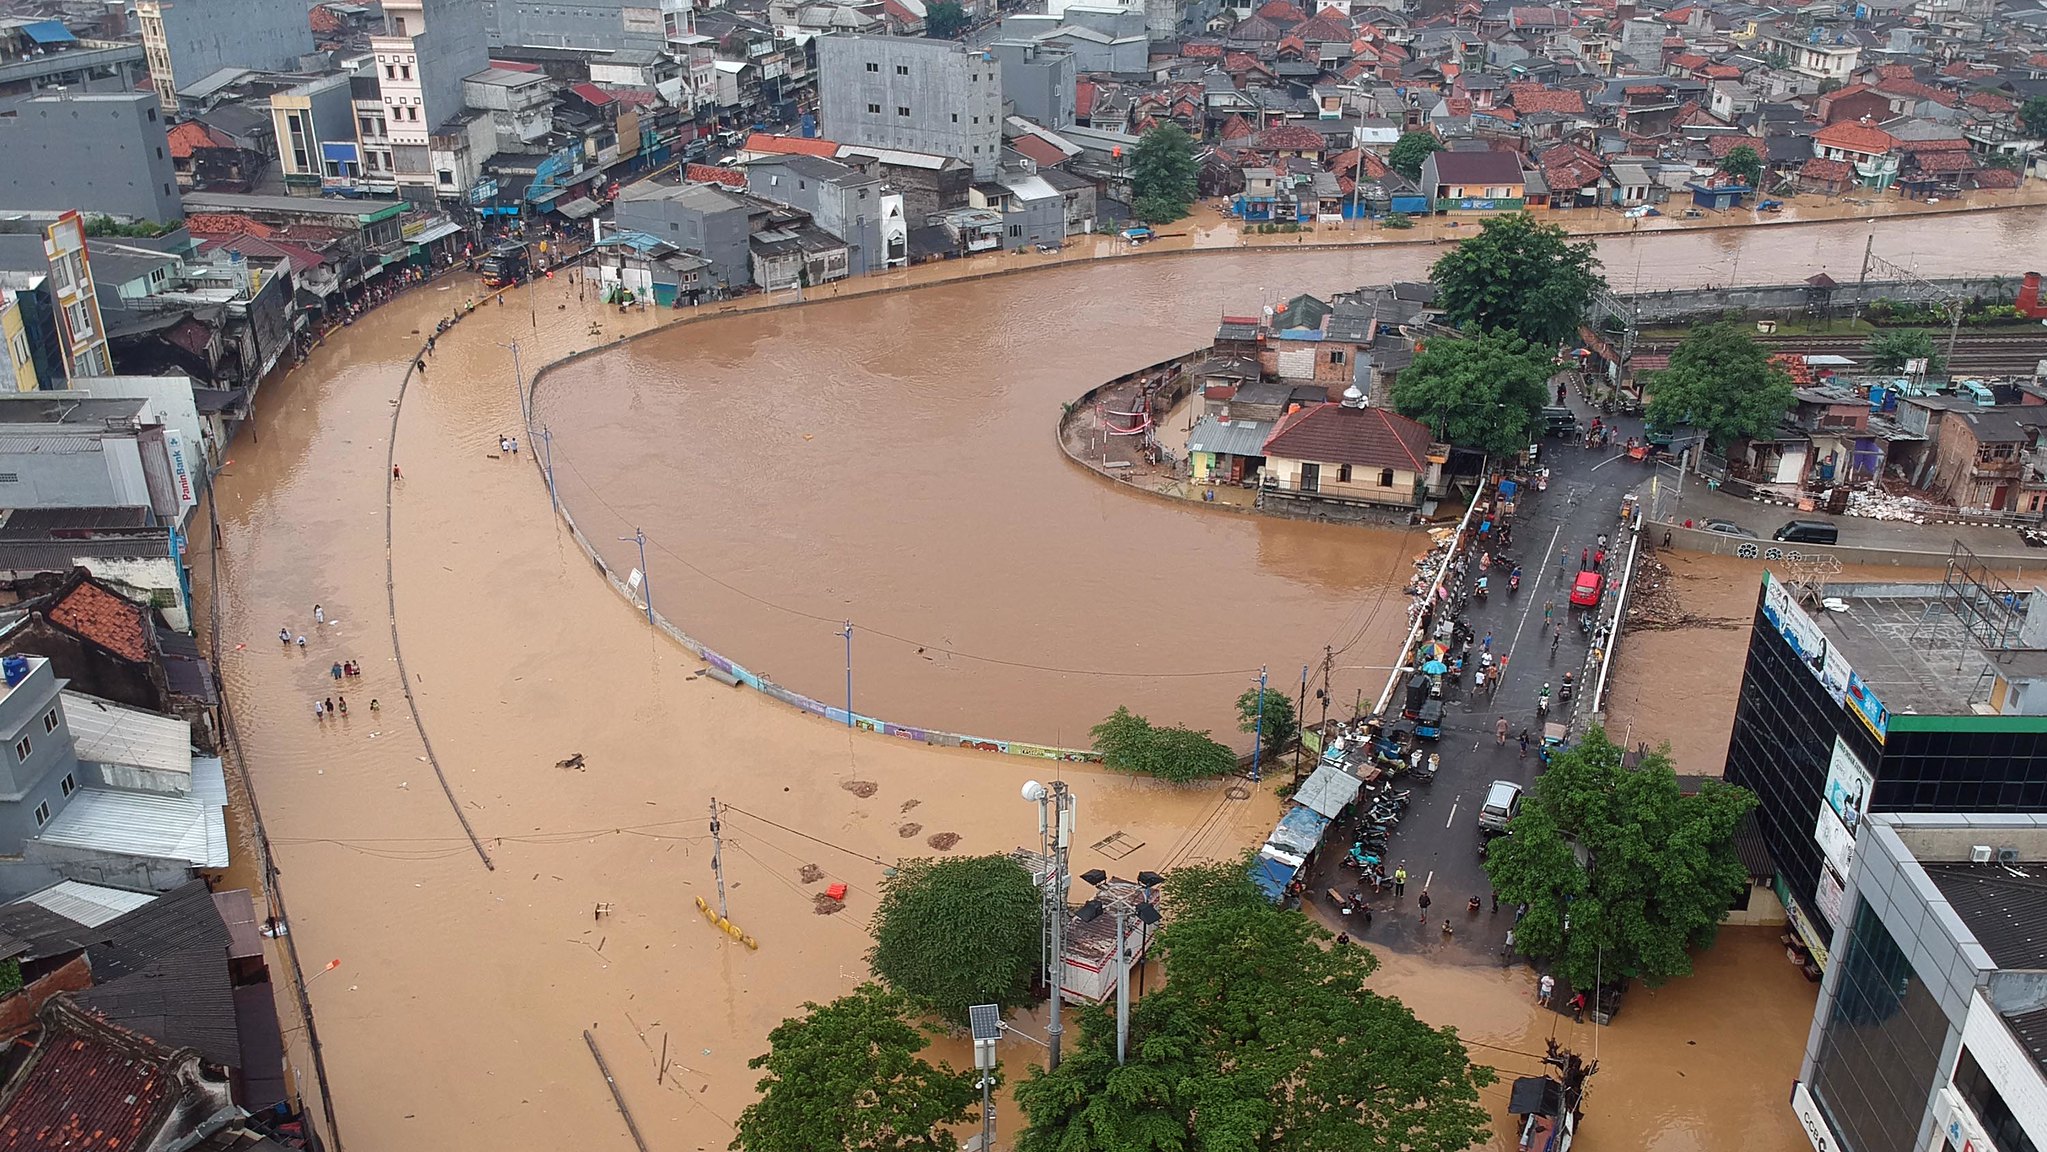 Inundación en la localidad de Prumpung, Yakarta. Foto: Arya Manggala / World Meteorological Organization 